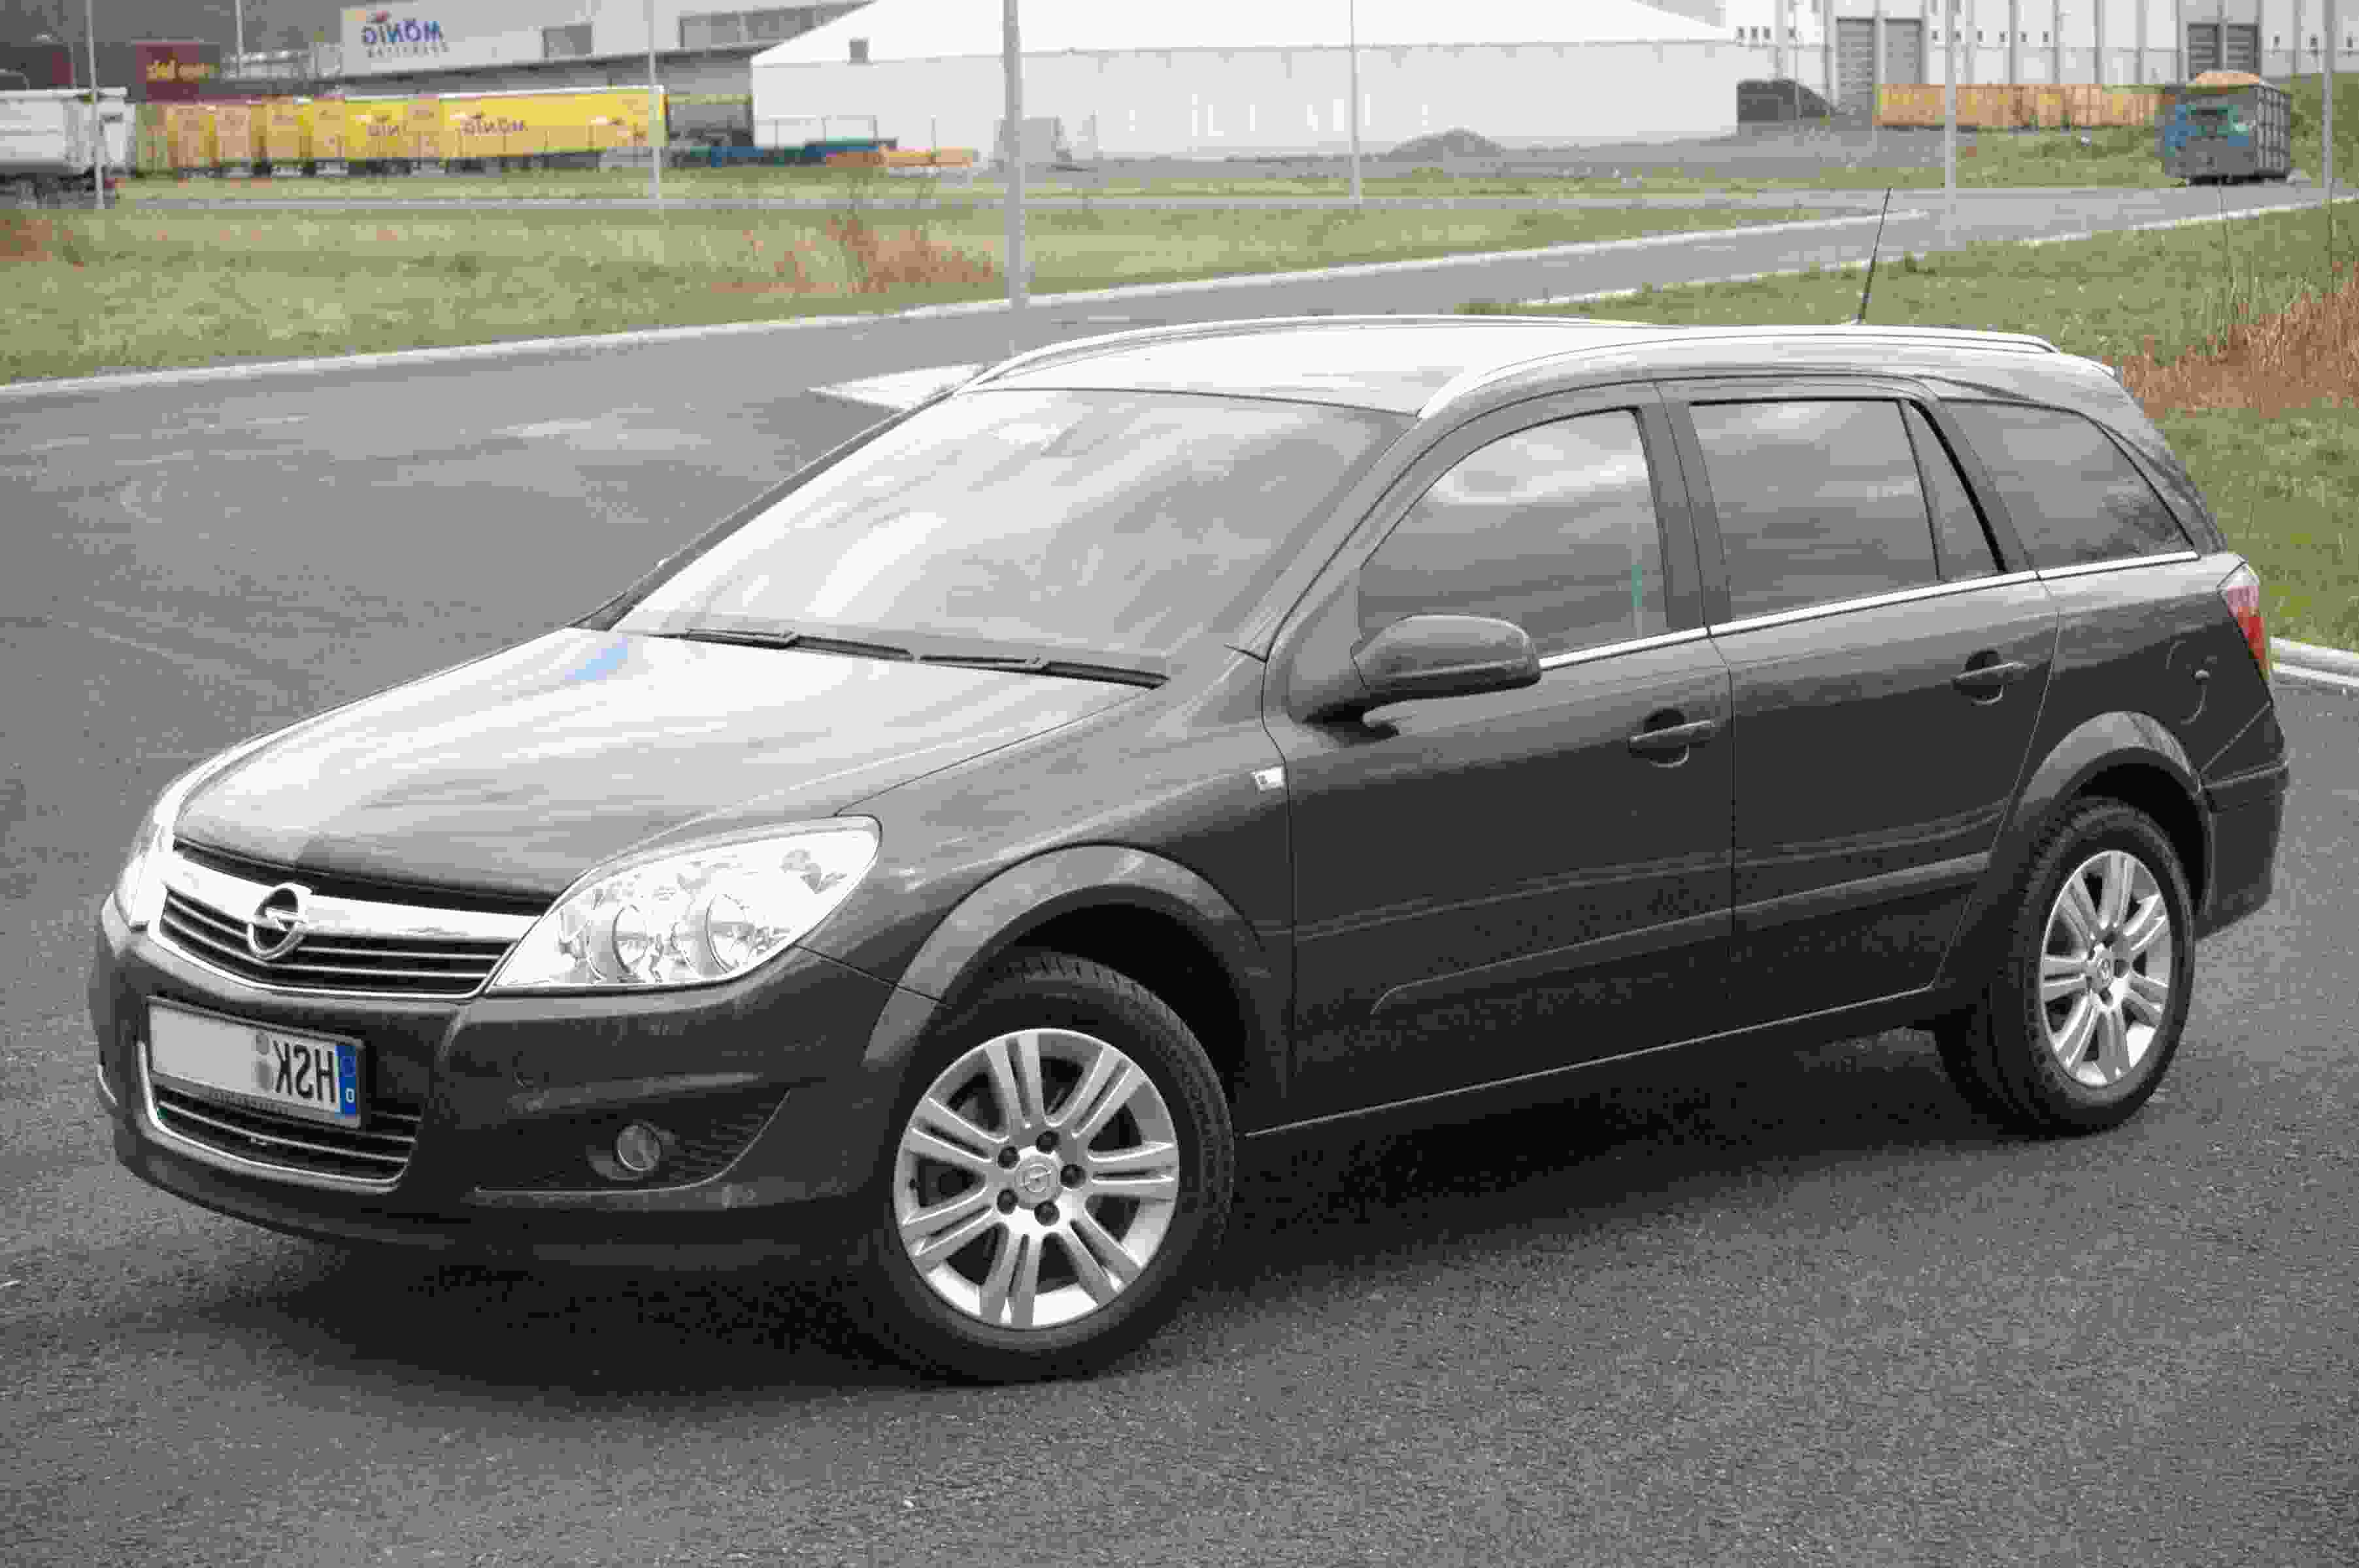 Dachtrager Opel Astra H Caravan Gebraucht Kaufen 3 St Bis 70 Gunstiger